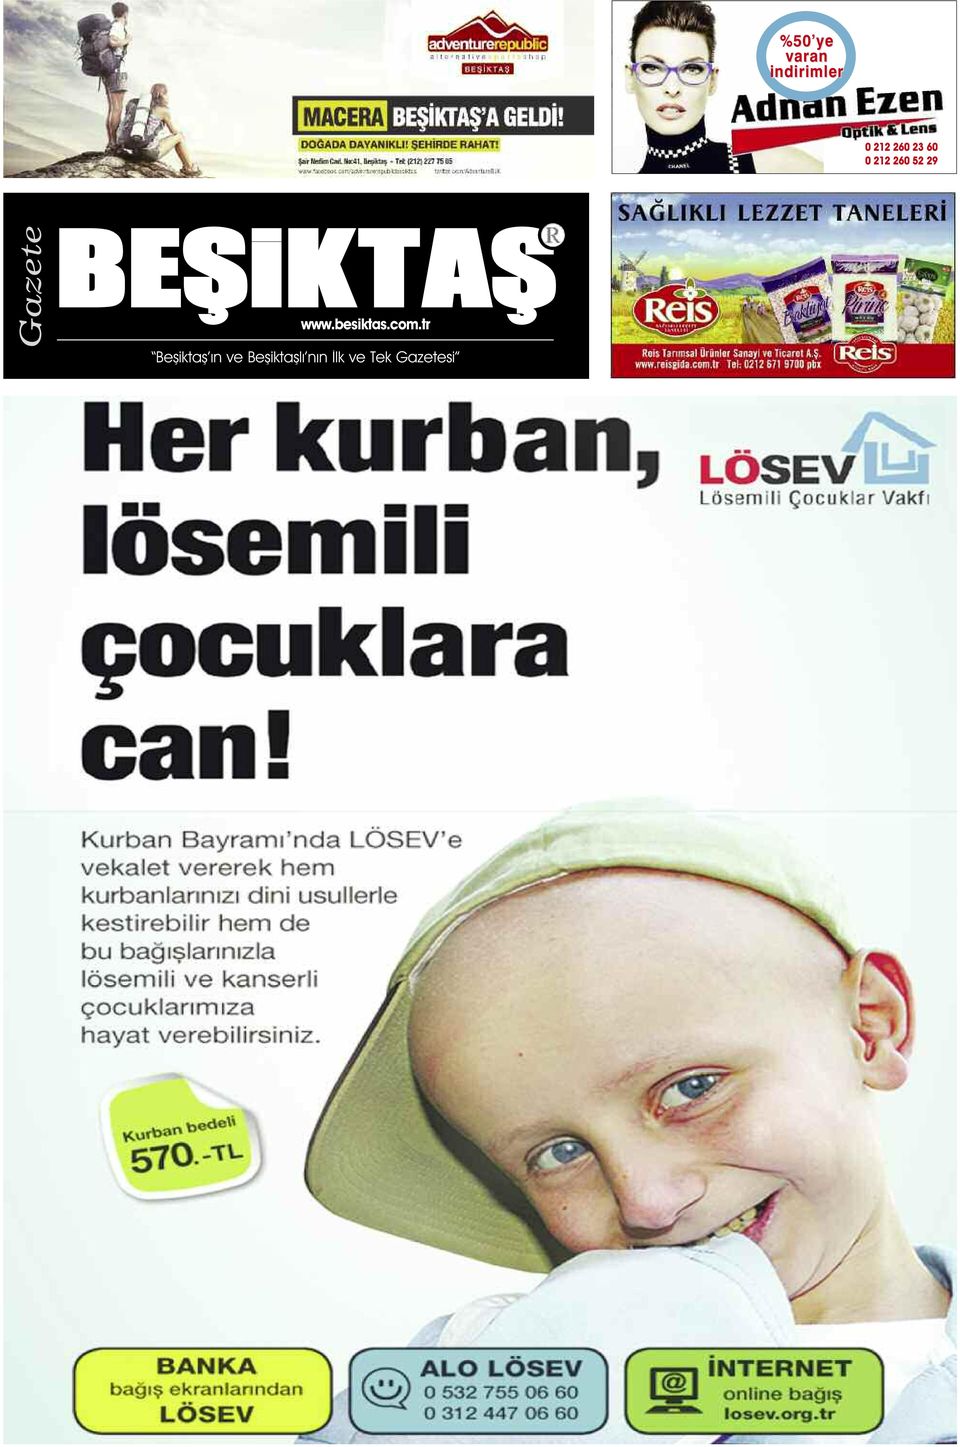 BEŞiKTAŞ www.besiktas.com.